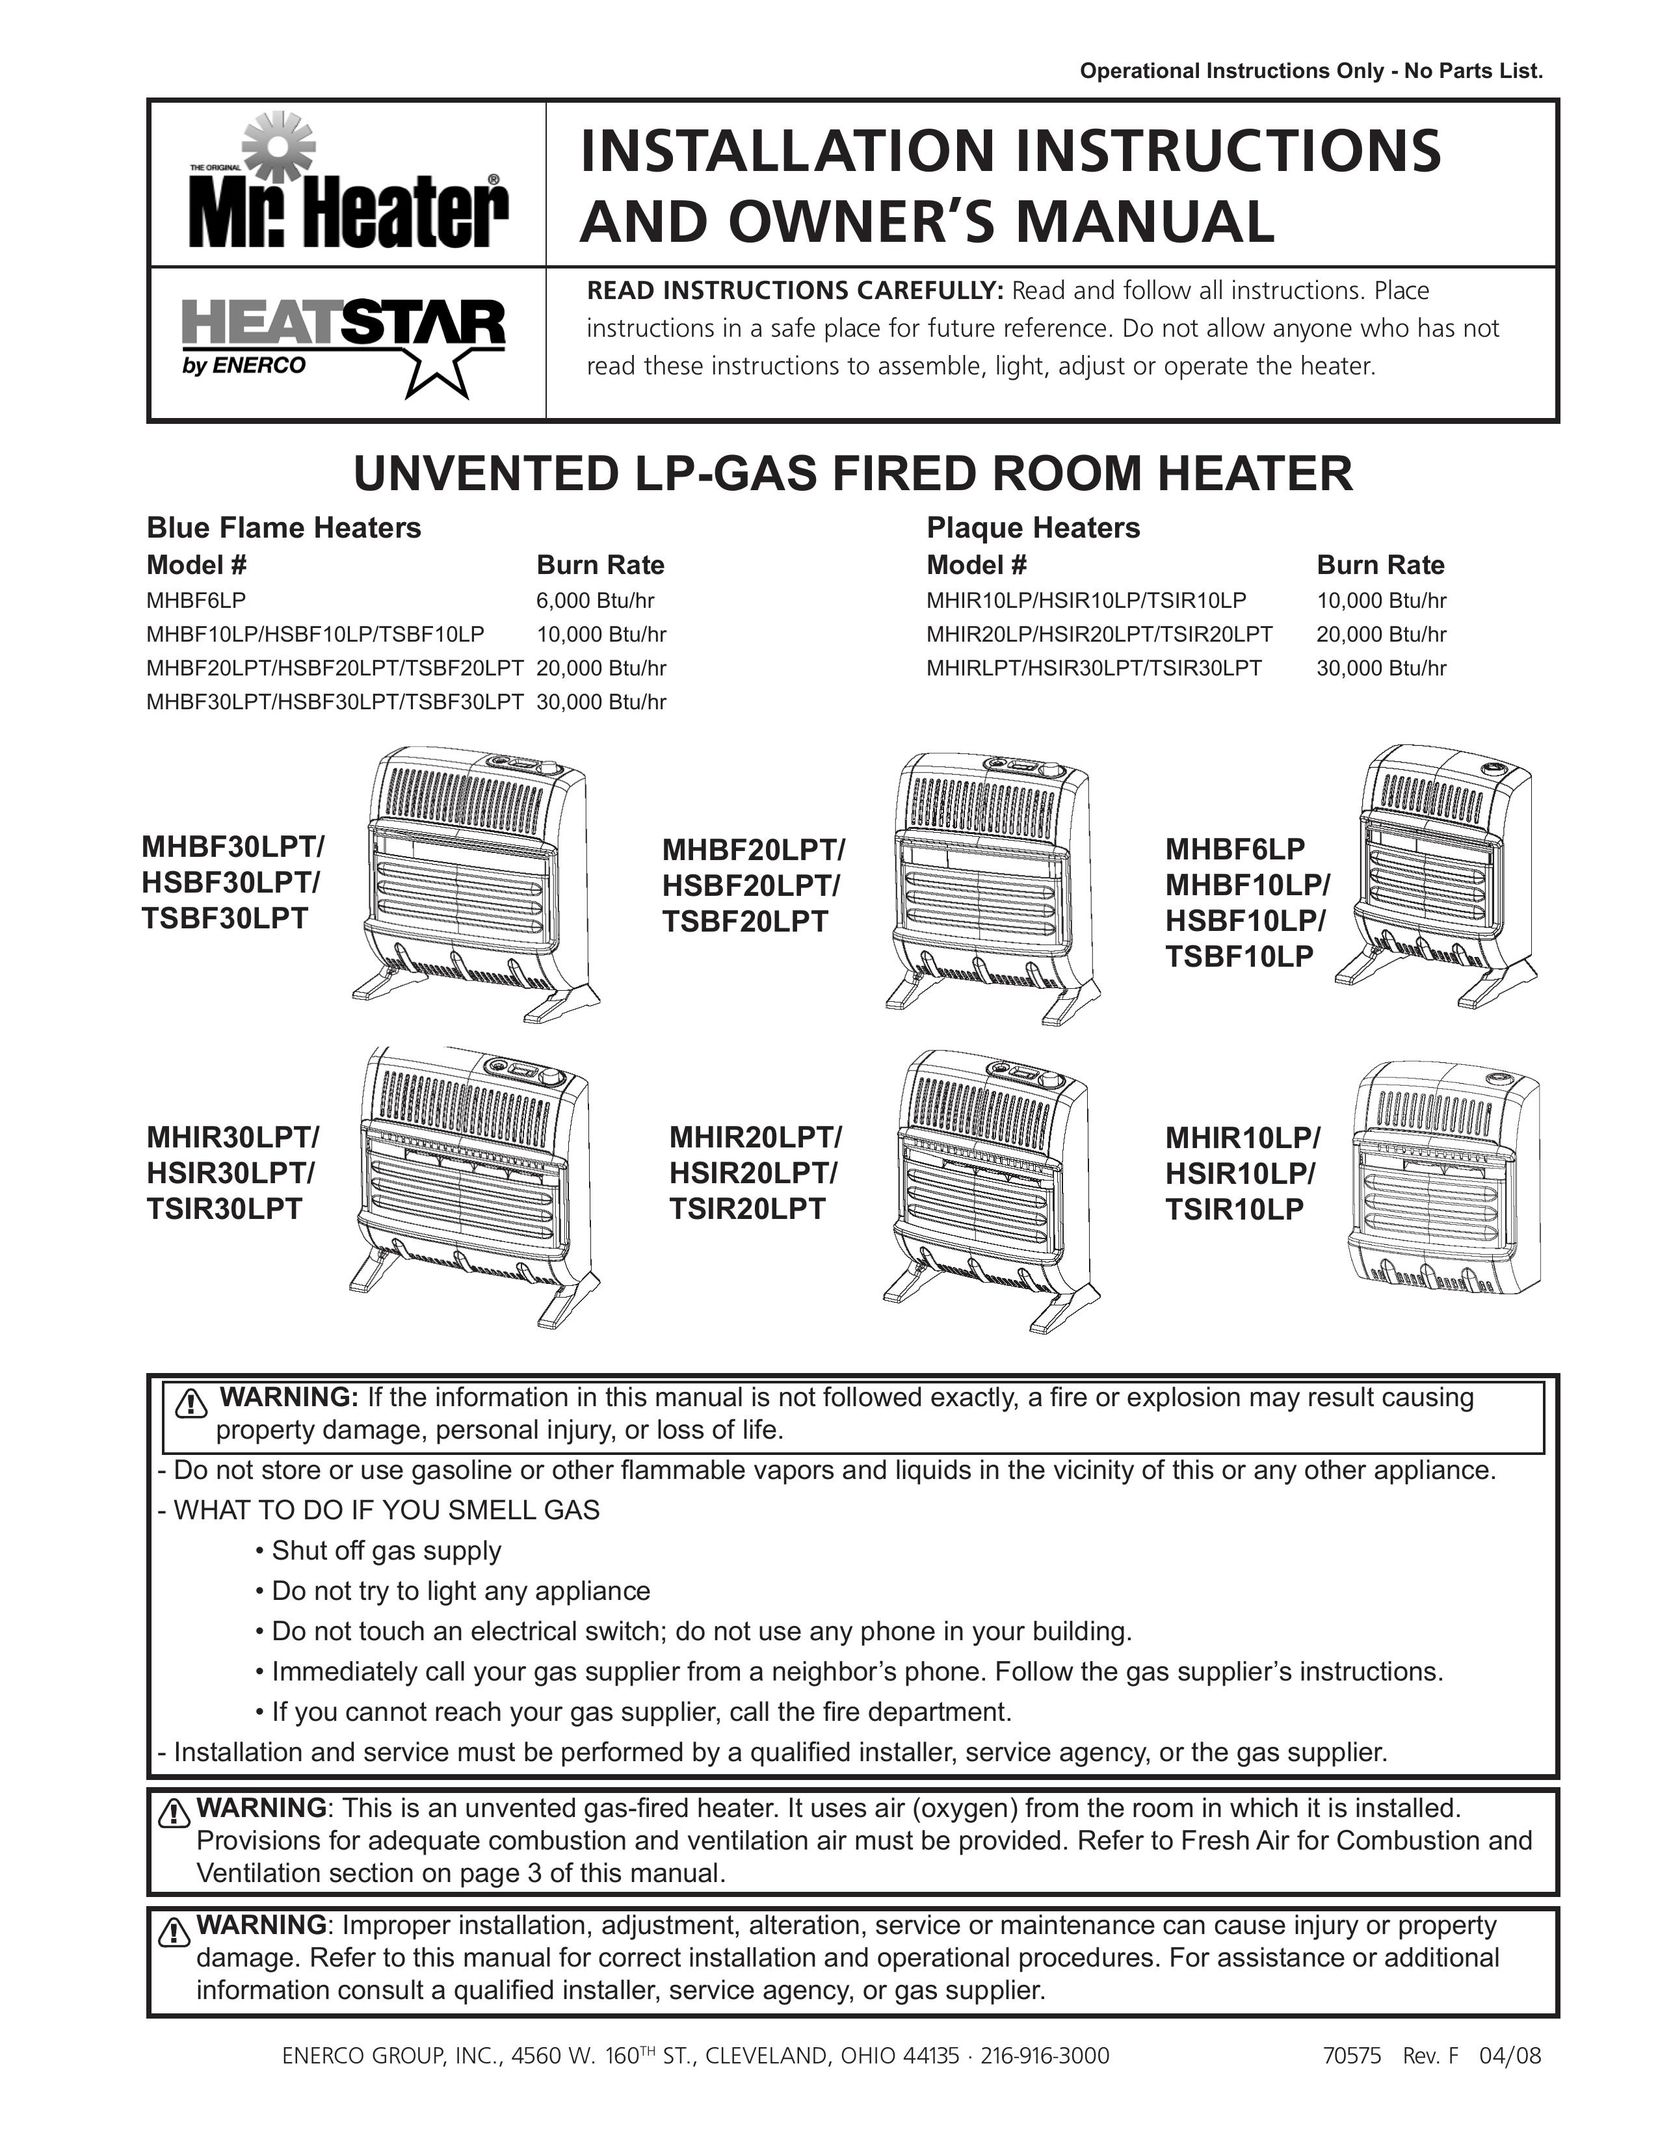 Enerco MHBF6LP Electric Heater User Manual